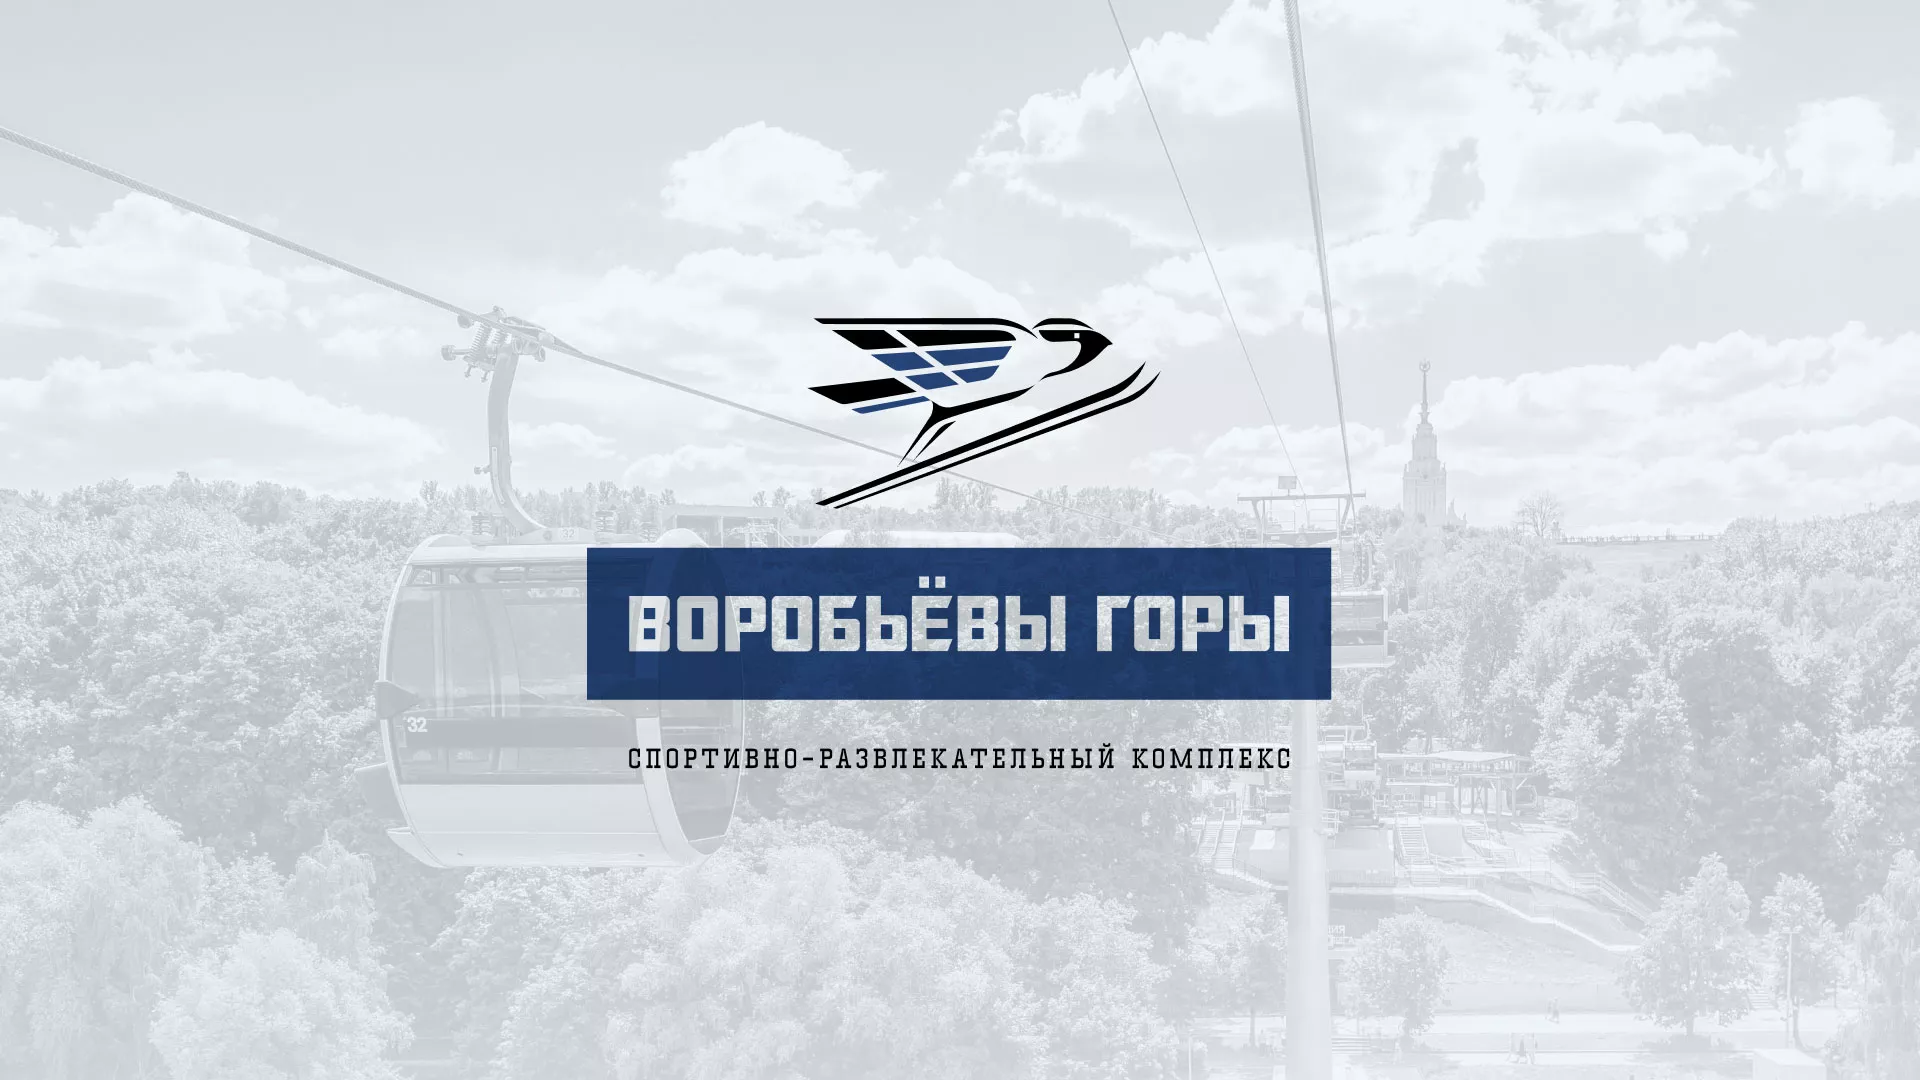 Разработка сайта в Новосиле для спортивно-развлекательного комплекса «Воробьёвы горы»